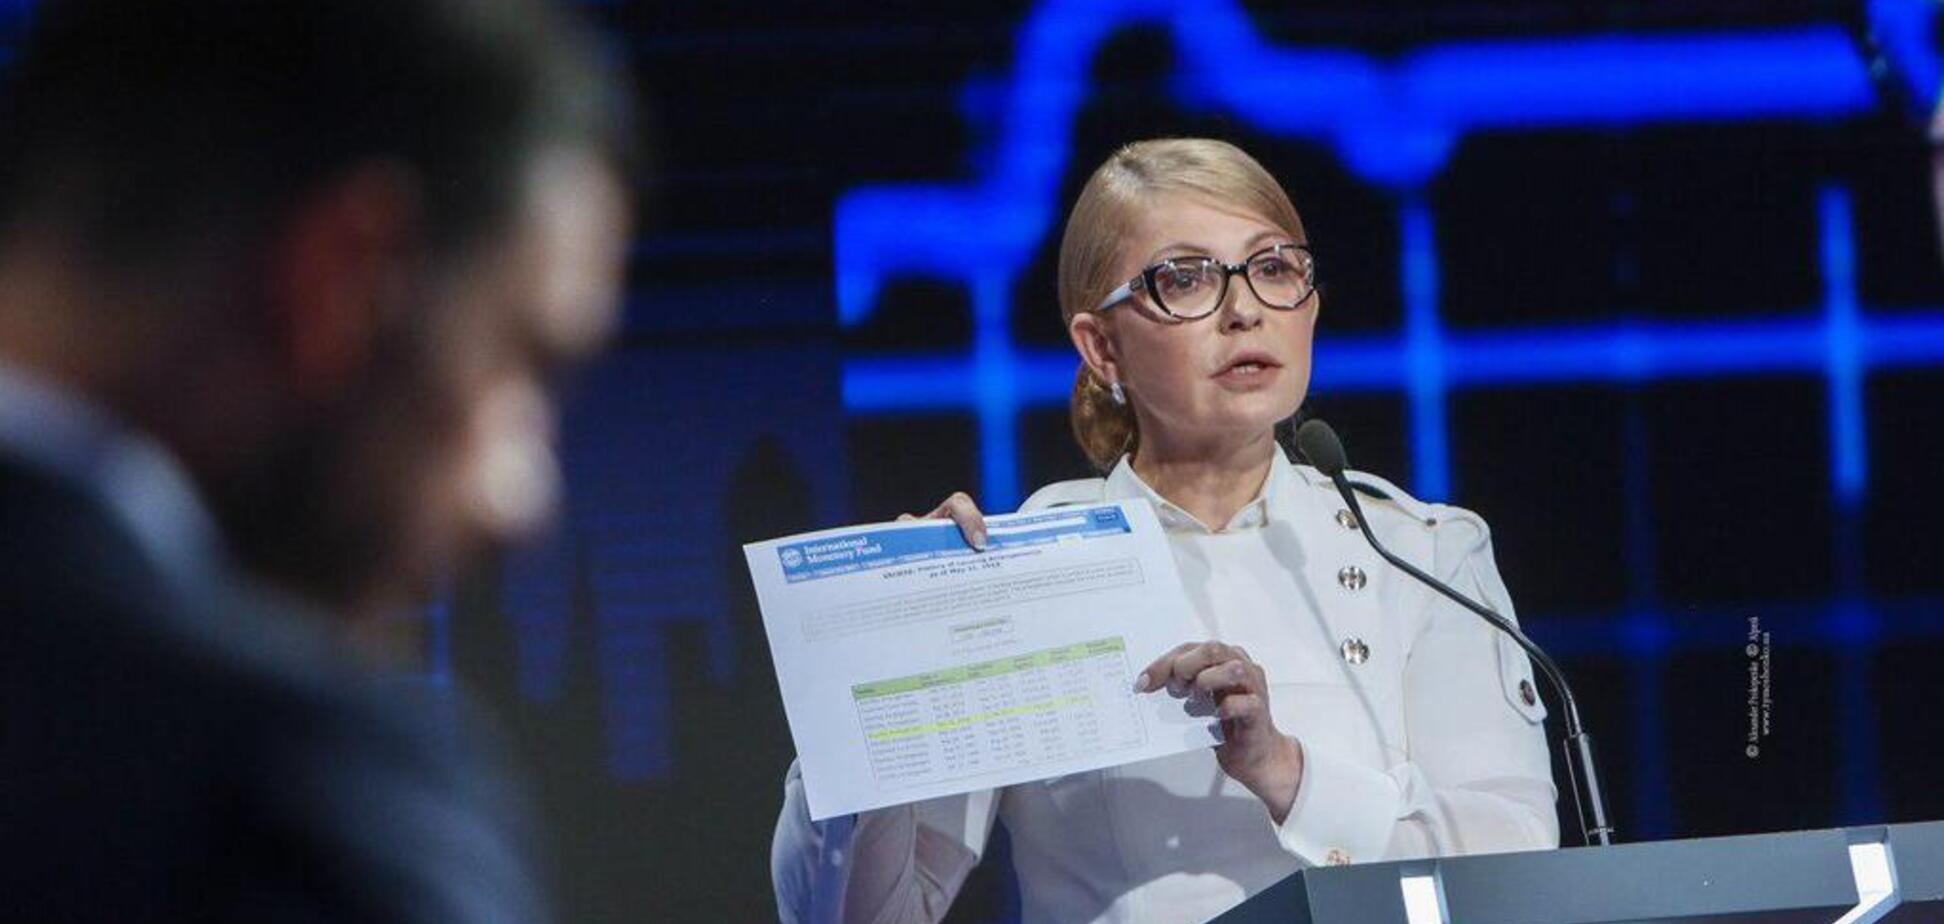 Тимошенко высмеяла попытки Гройсмана выдать себя за 'новое лицо' и предупредила об ответственности за коррупцию